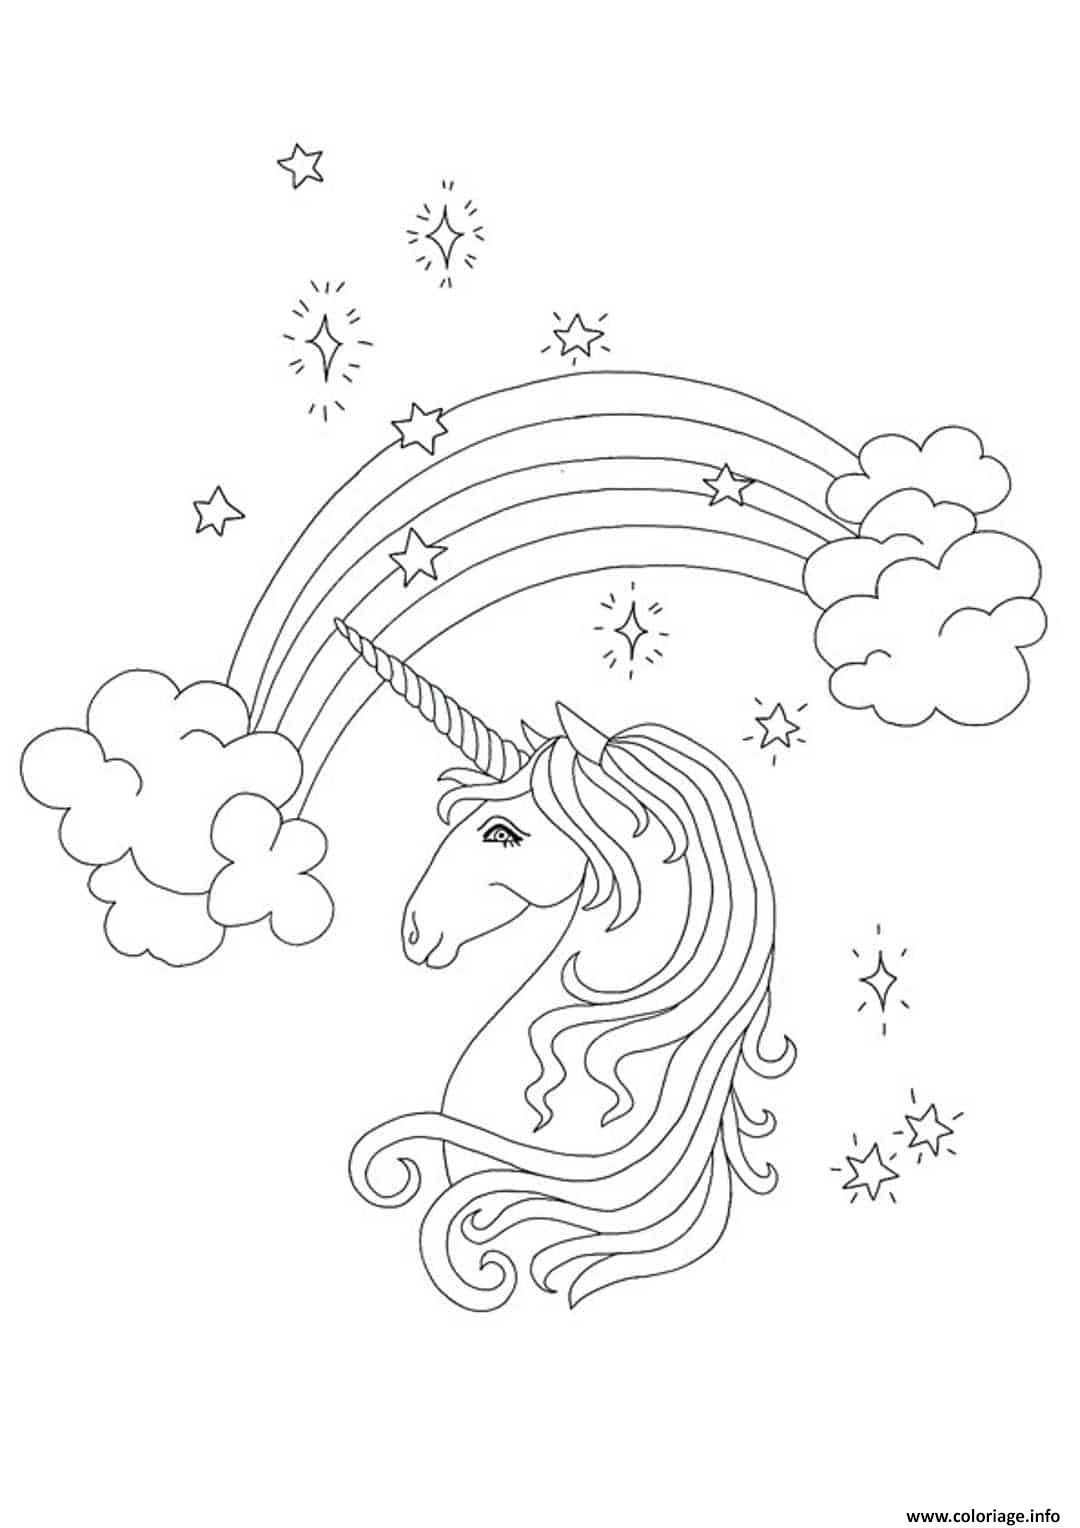 Dessin Tete de licorne arc en ciel Coloriage Gratuit à Imprimer